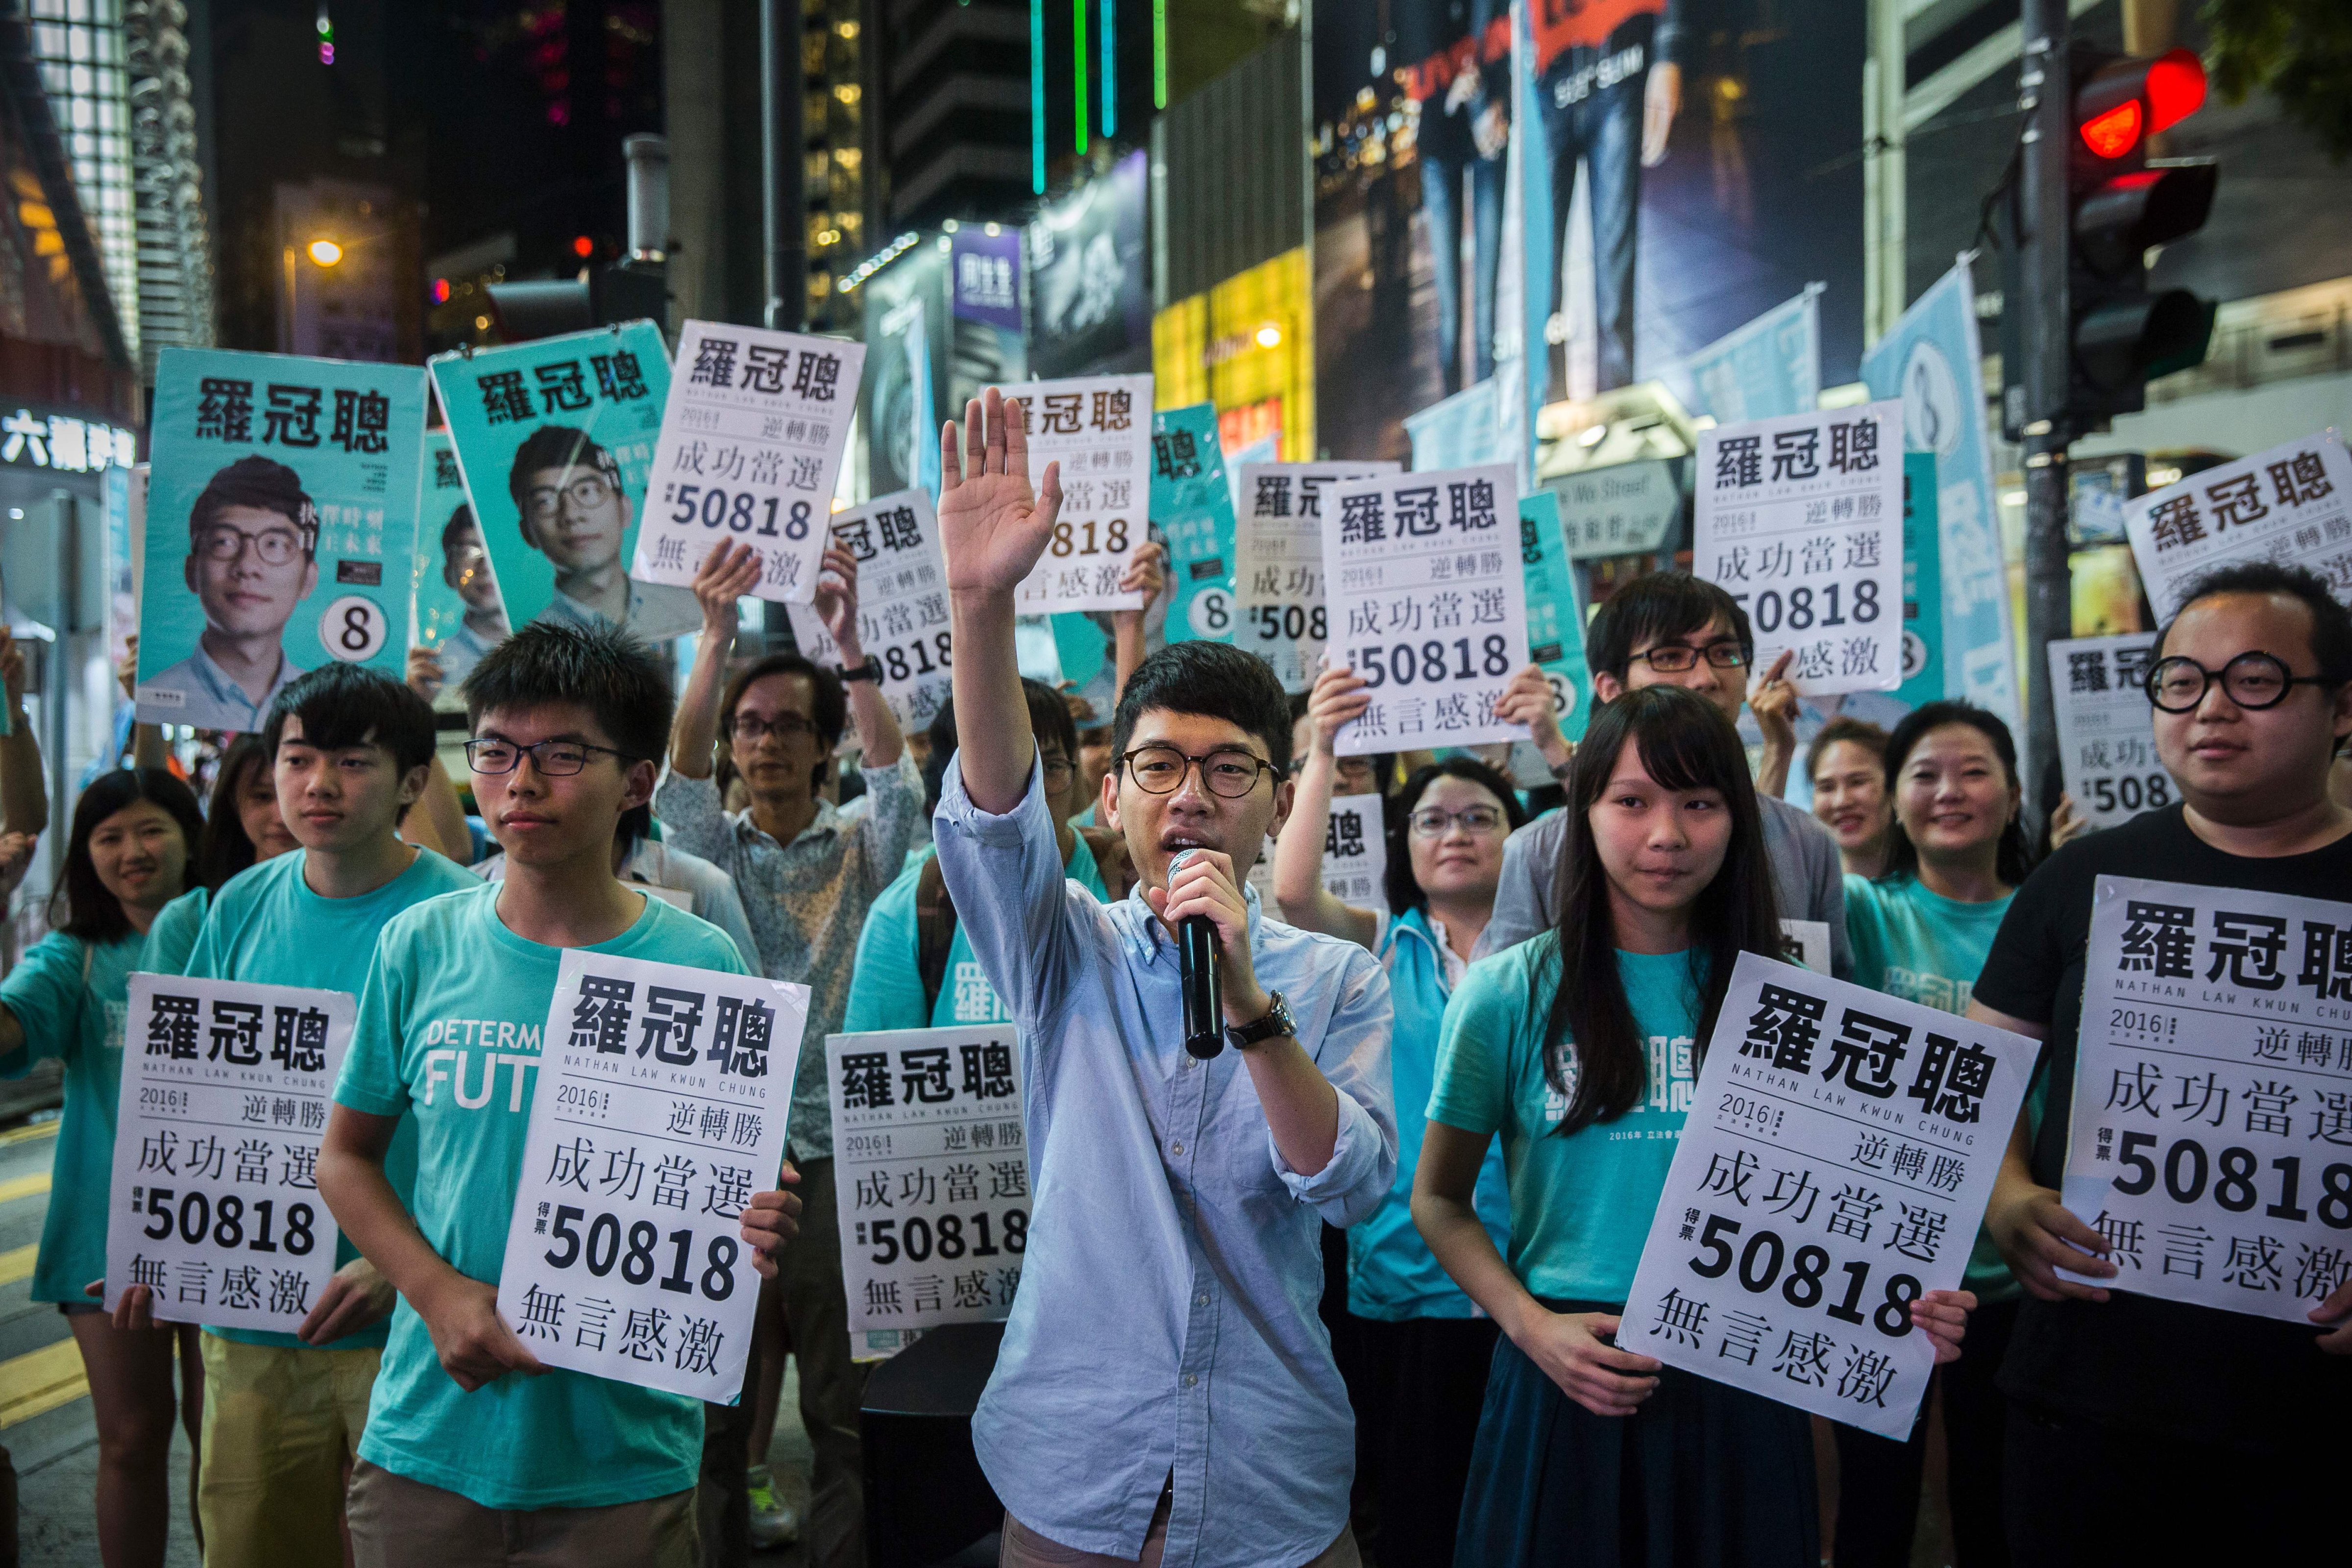 HONGKONG-CHINA-DEMOCRACY-INDEPENDENCE-ELECTIONS-POLITICS